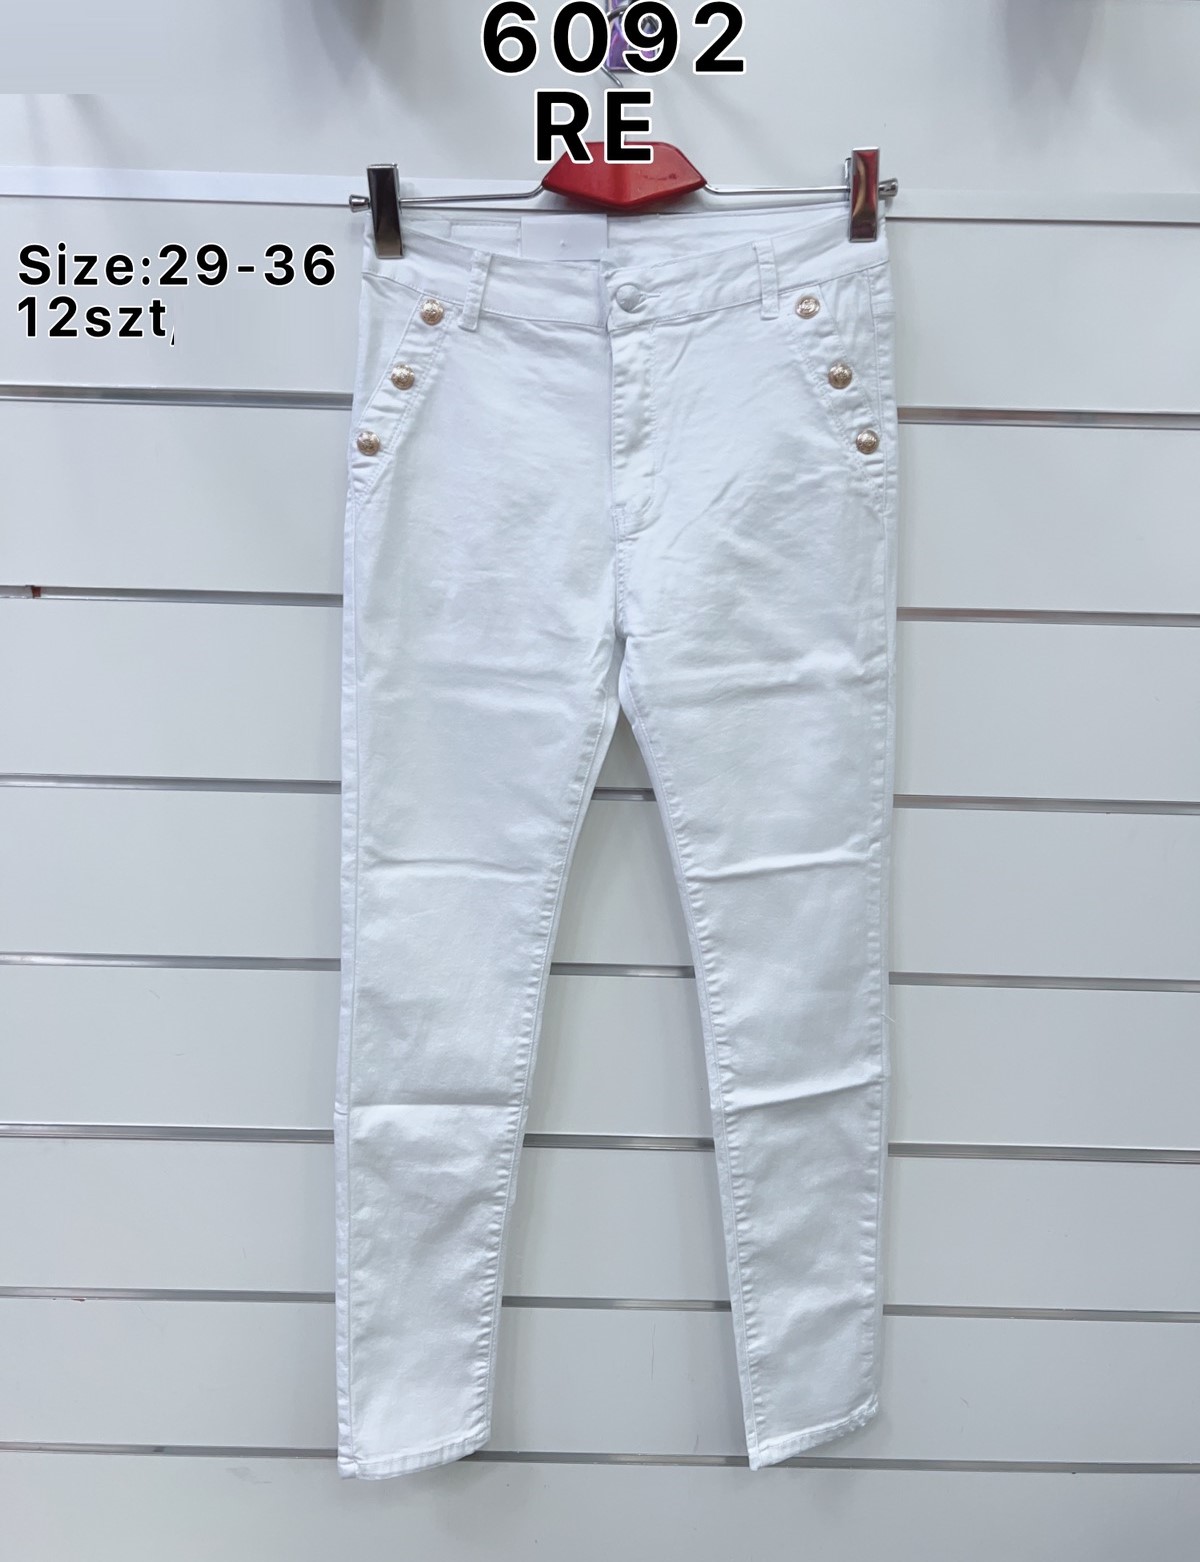 Spodnie  damskie jeans Roz  29-36.  1 kolor . Paczka 12szt